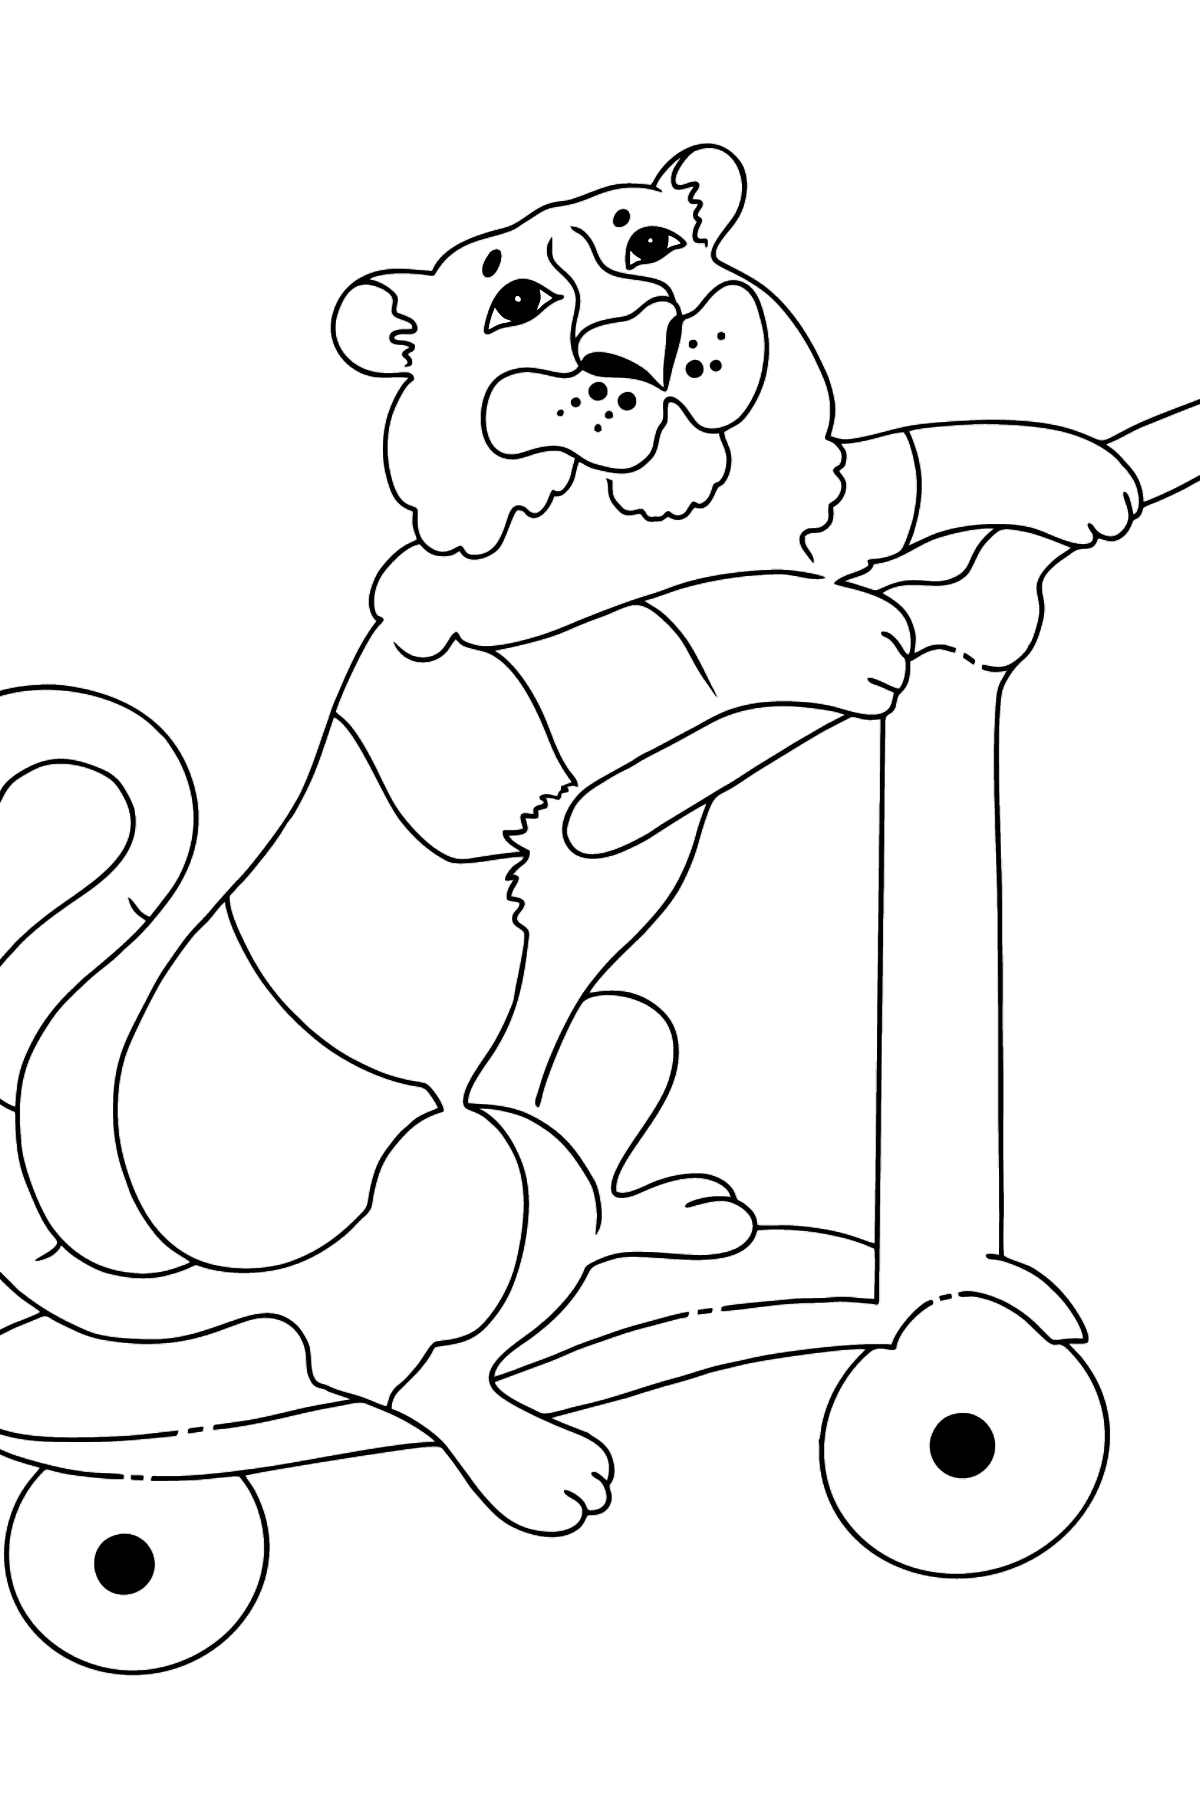 Desenho de tigre engraçado para colorir (fácil) - Imagens para Colorir para Crianças